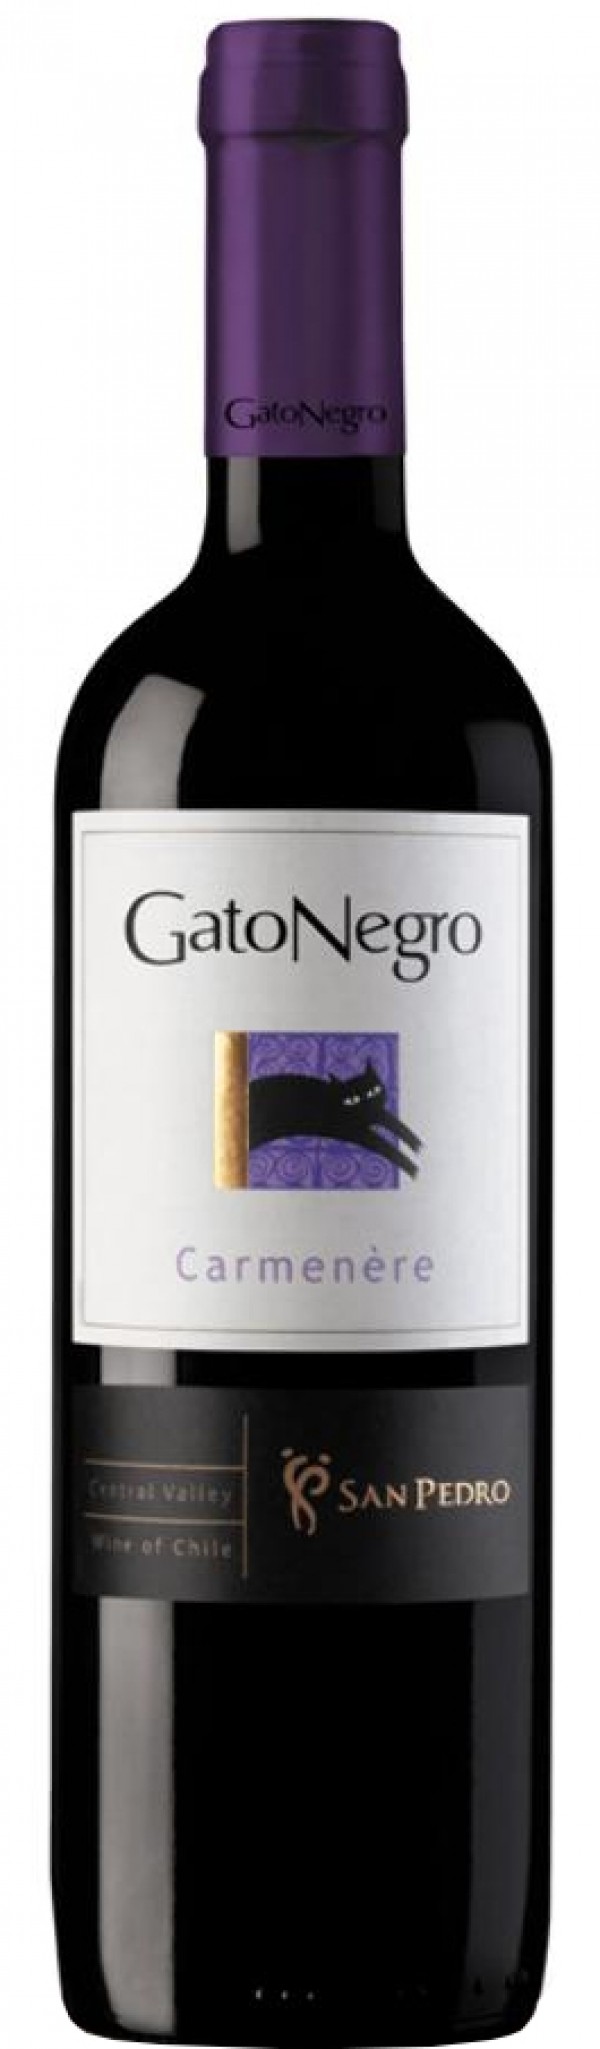 Vinho chileno Gato Negro carmenère 750 ml